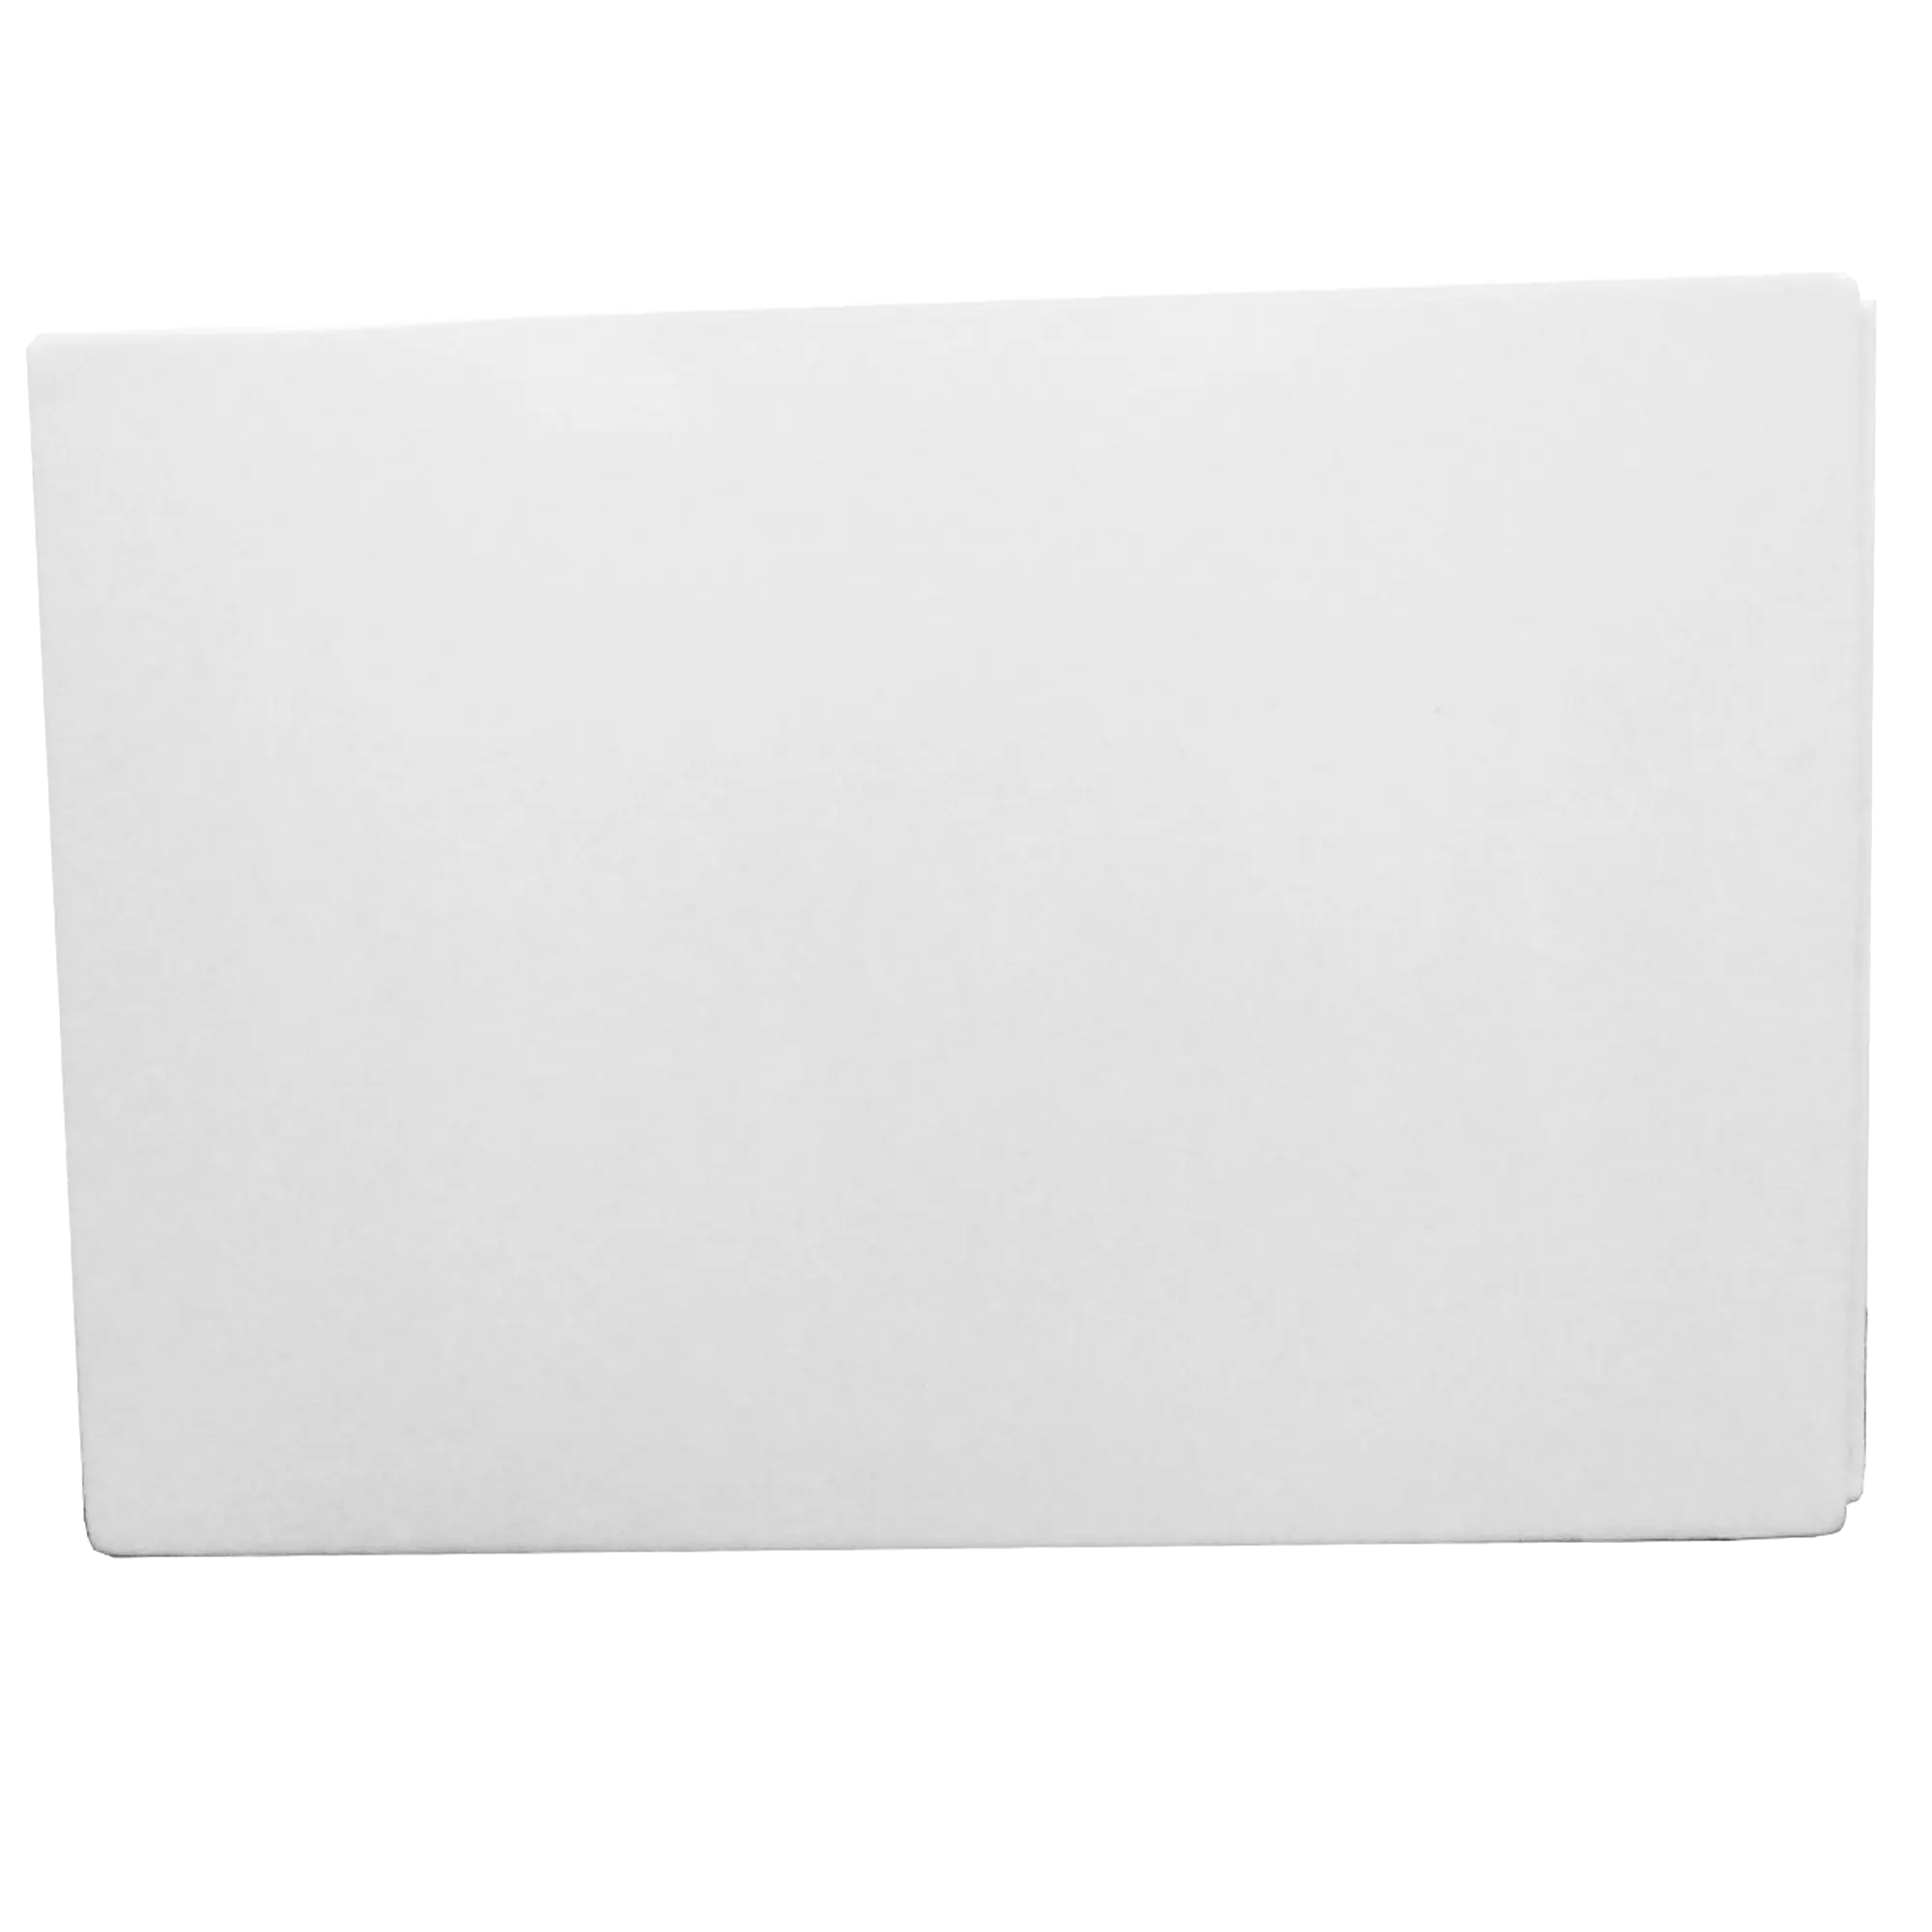 Faldón de bañera faldon blanco 50x80 cm